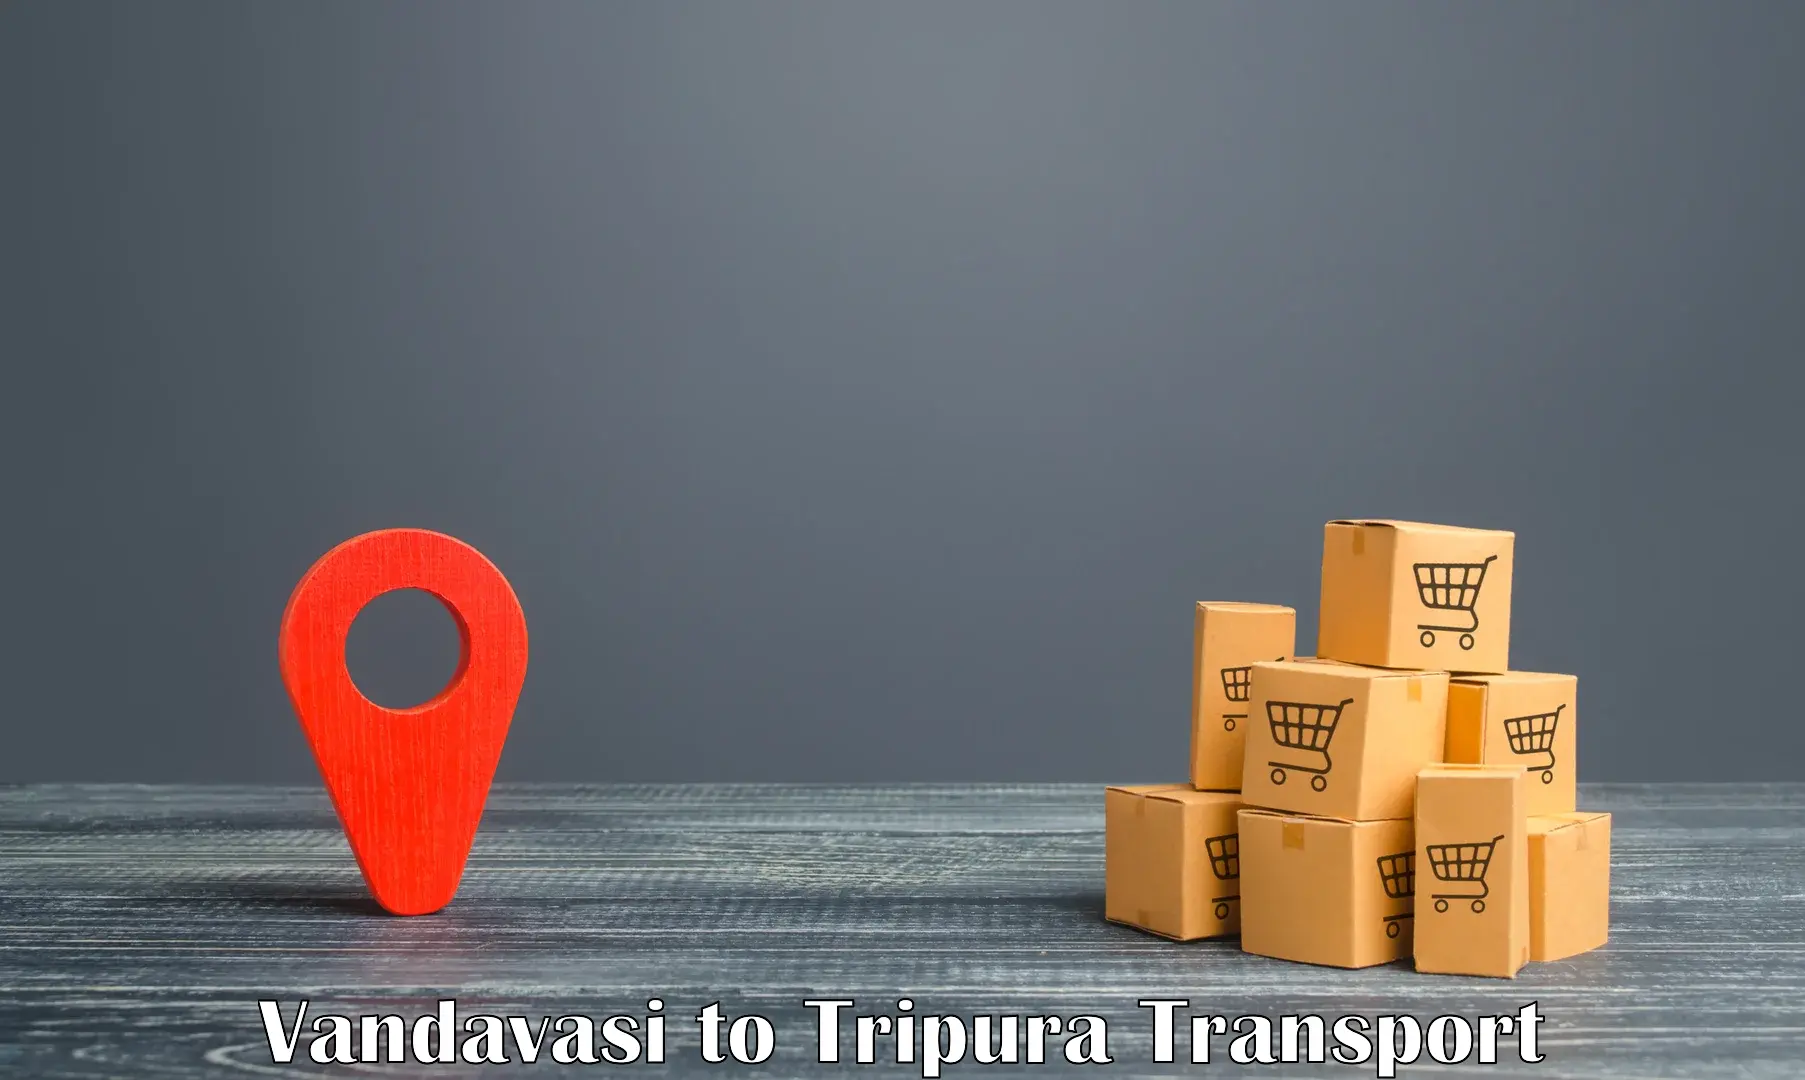 Door to door transport services in Vandavasi to Udaipur Tripura